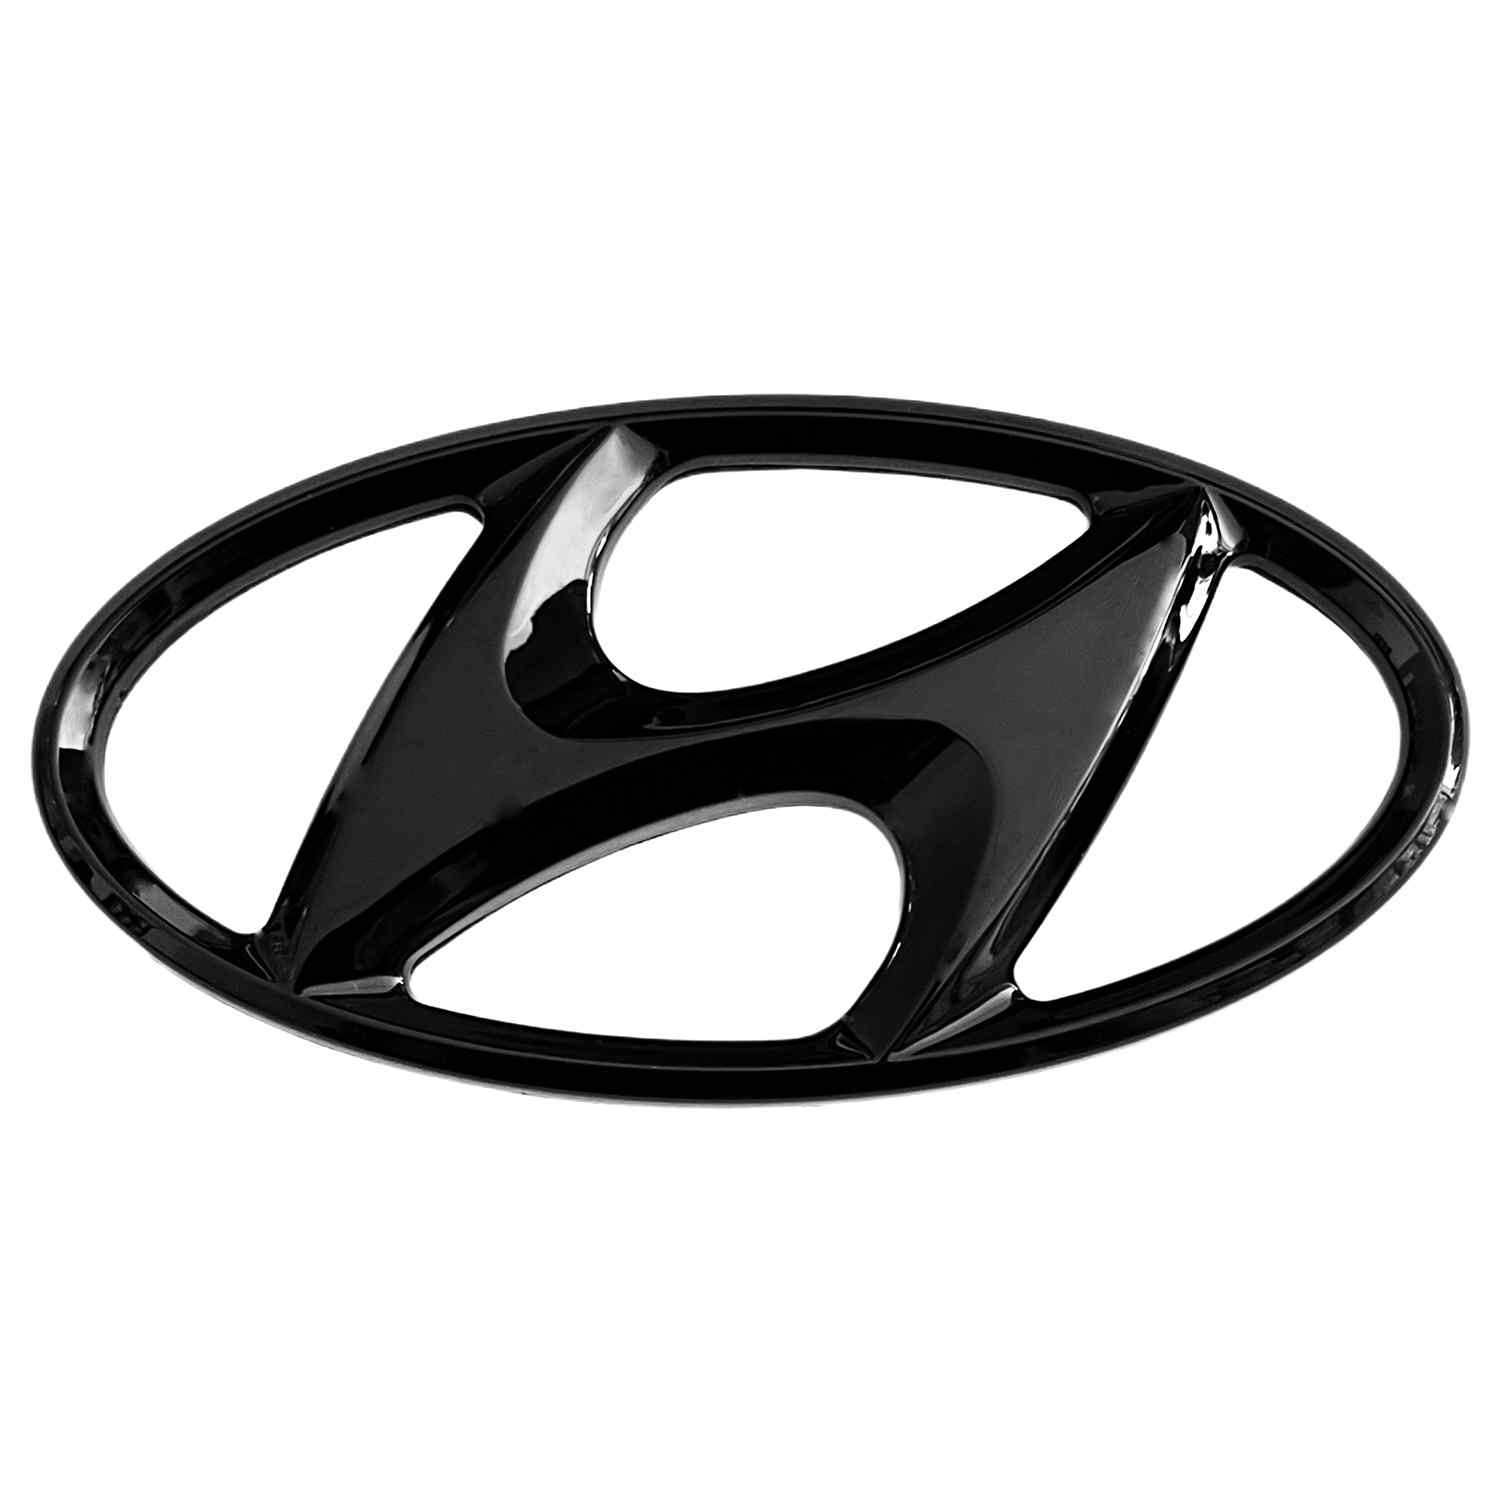 Emblema adhesivo maletero compatible con Hyundai 115 mm x 55mm Negro brillo